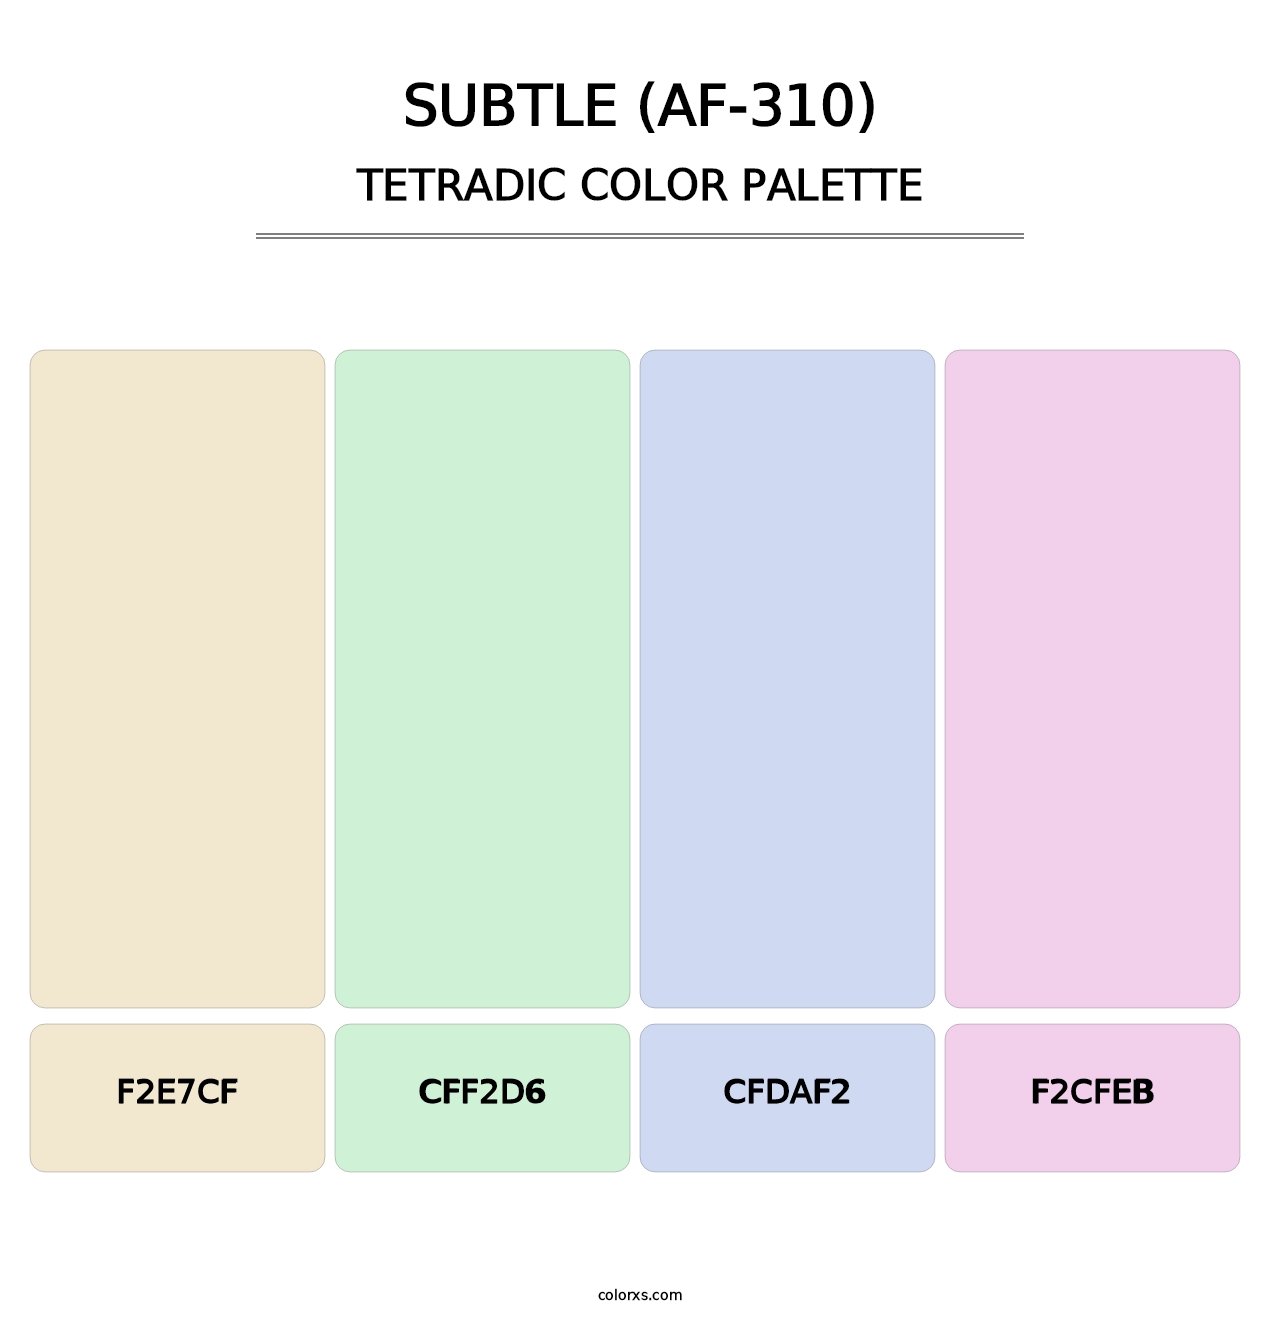 Subtle (AF-310) - Tetradic Color Palette